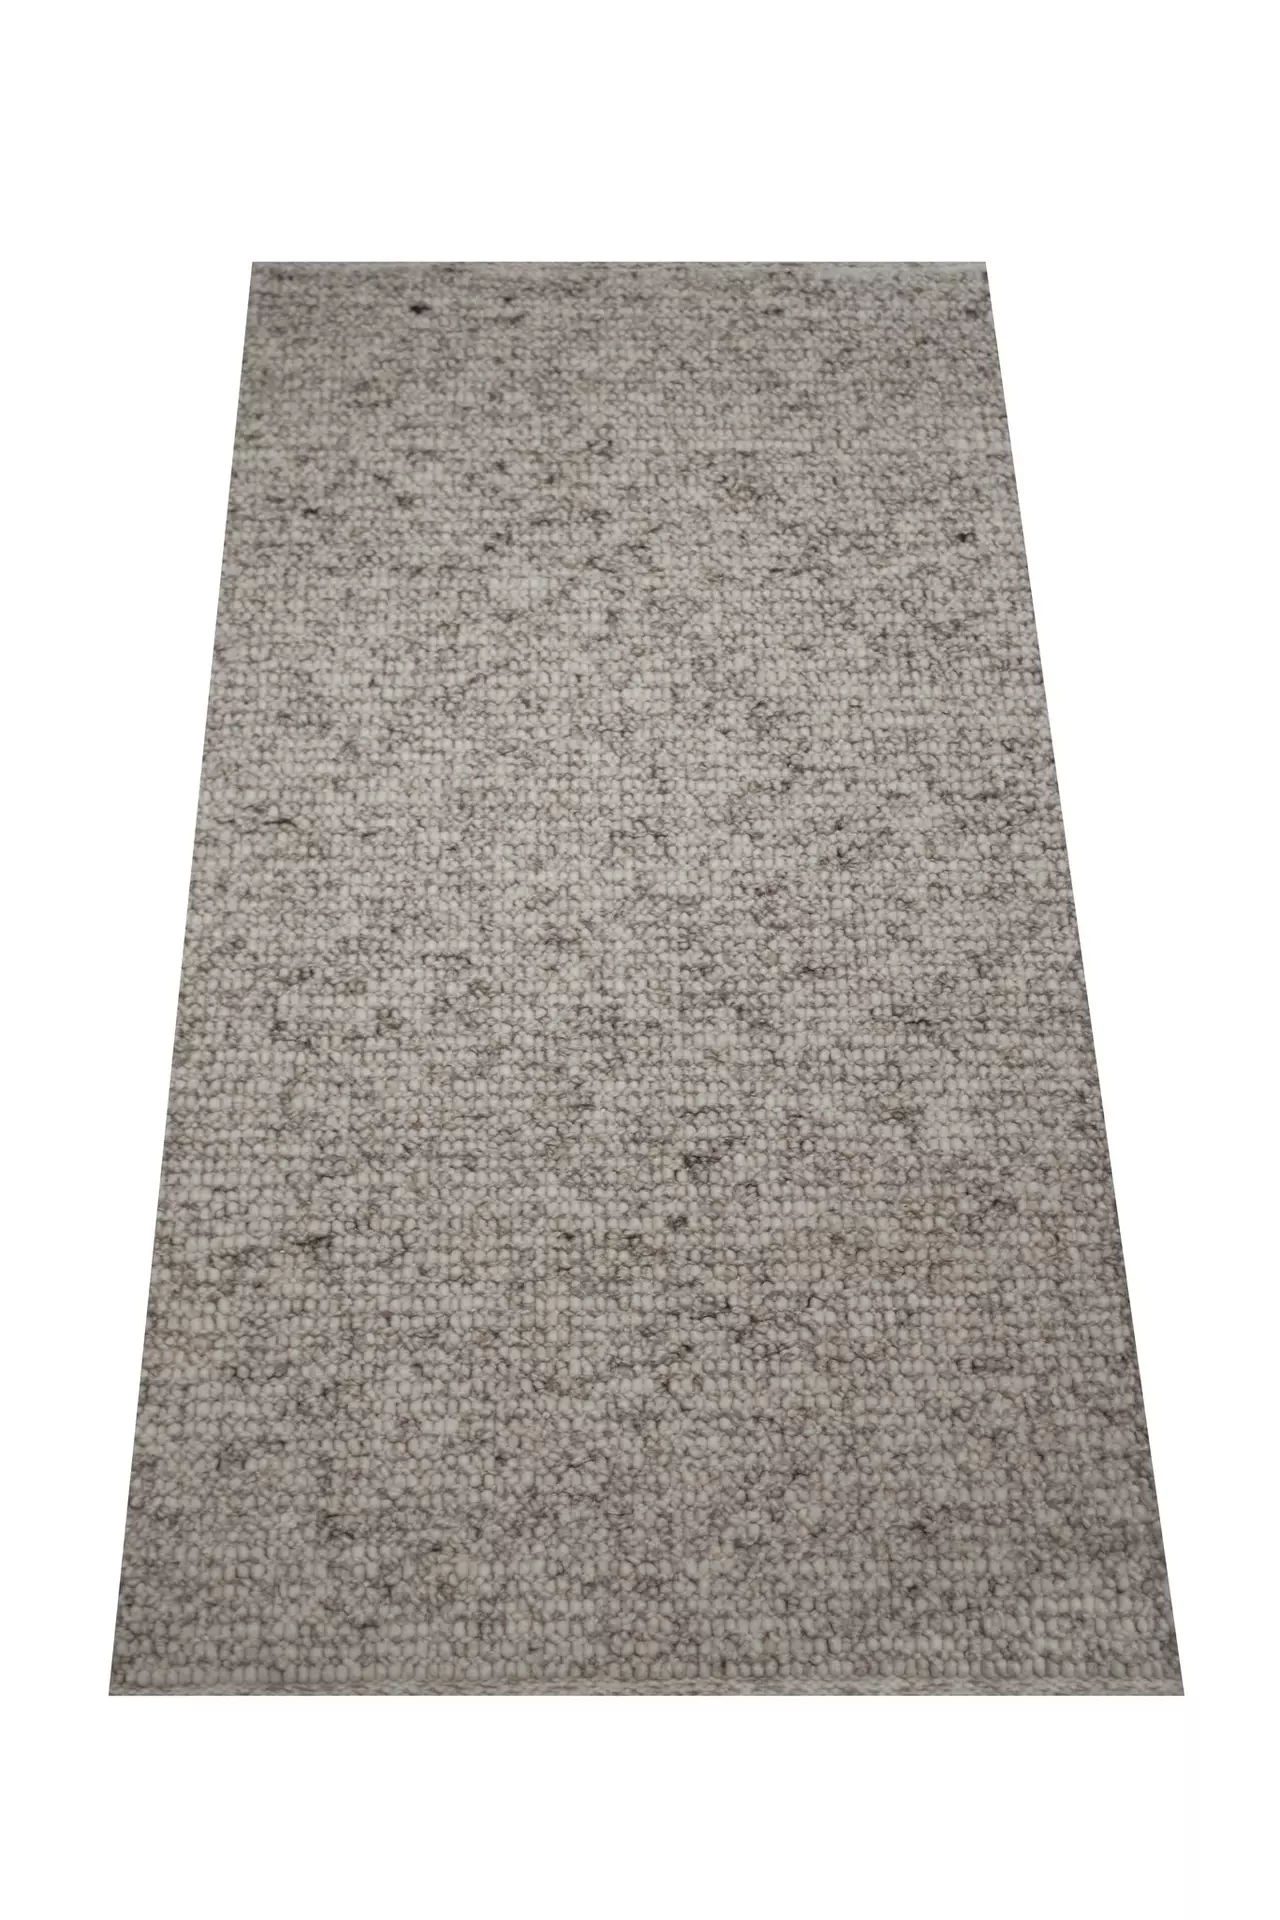 Handwebteppich Weitblick Polaris Allgäuer Teppichmanufaktur Textil 250 x 350 cm